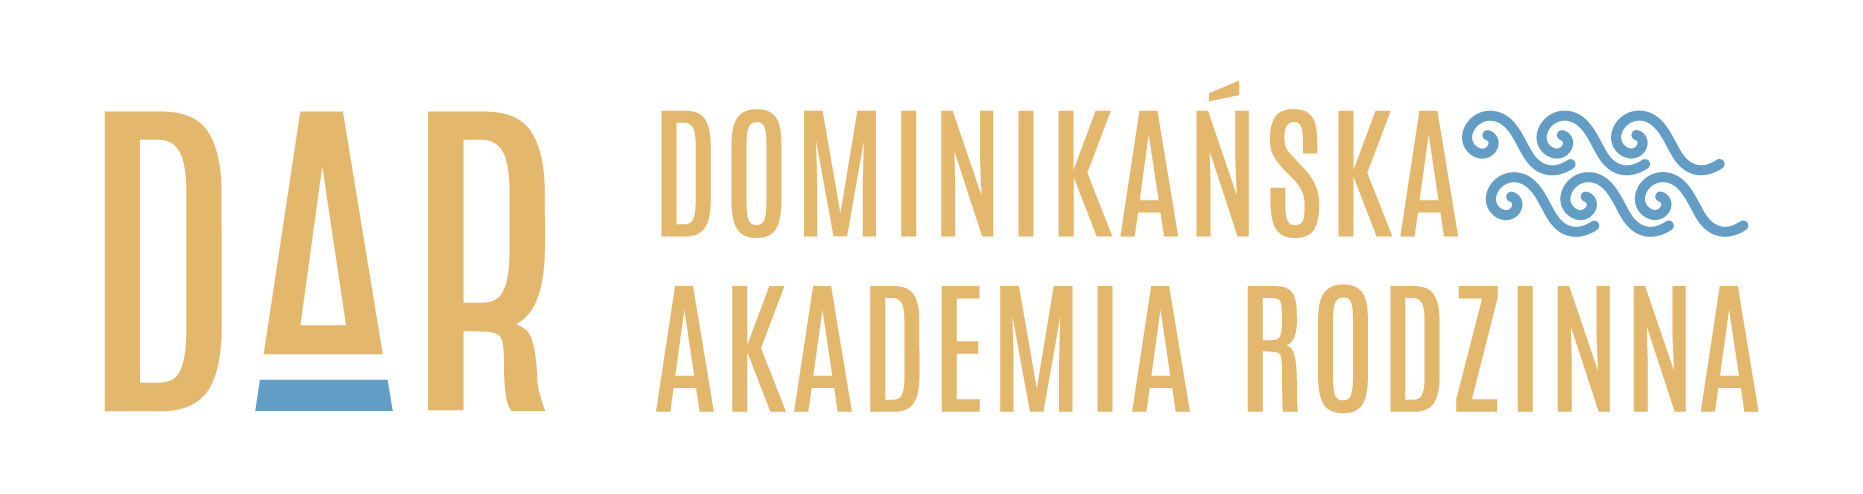 Dominikańska Akademia Rodzinna